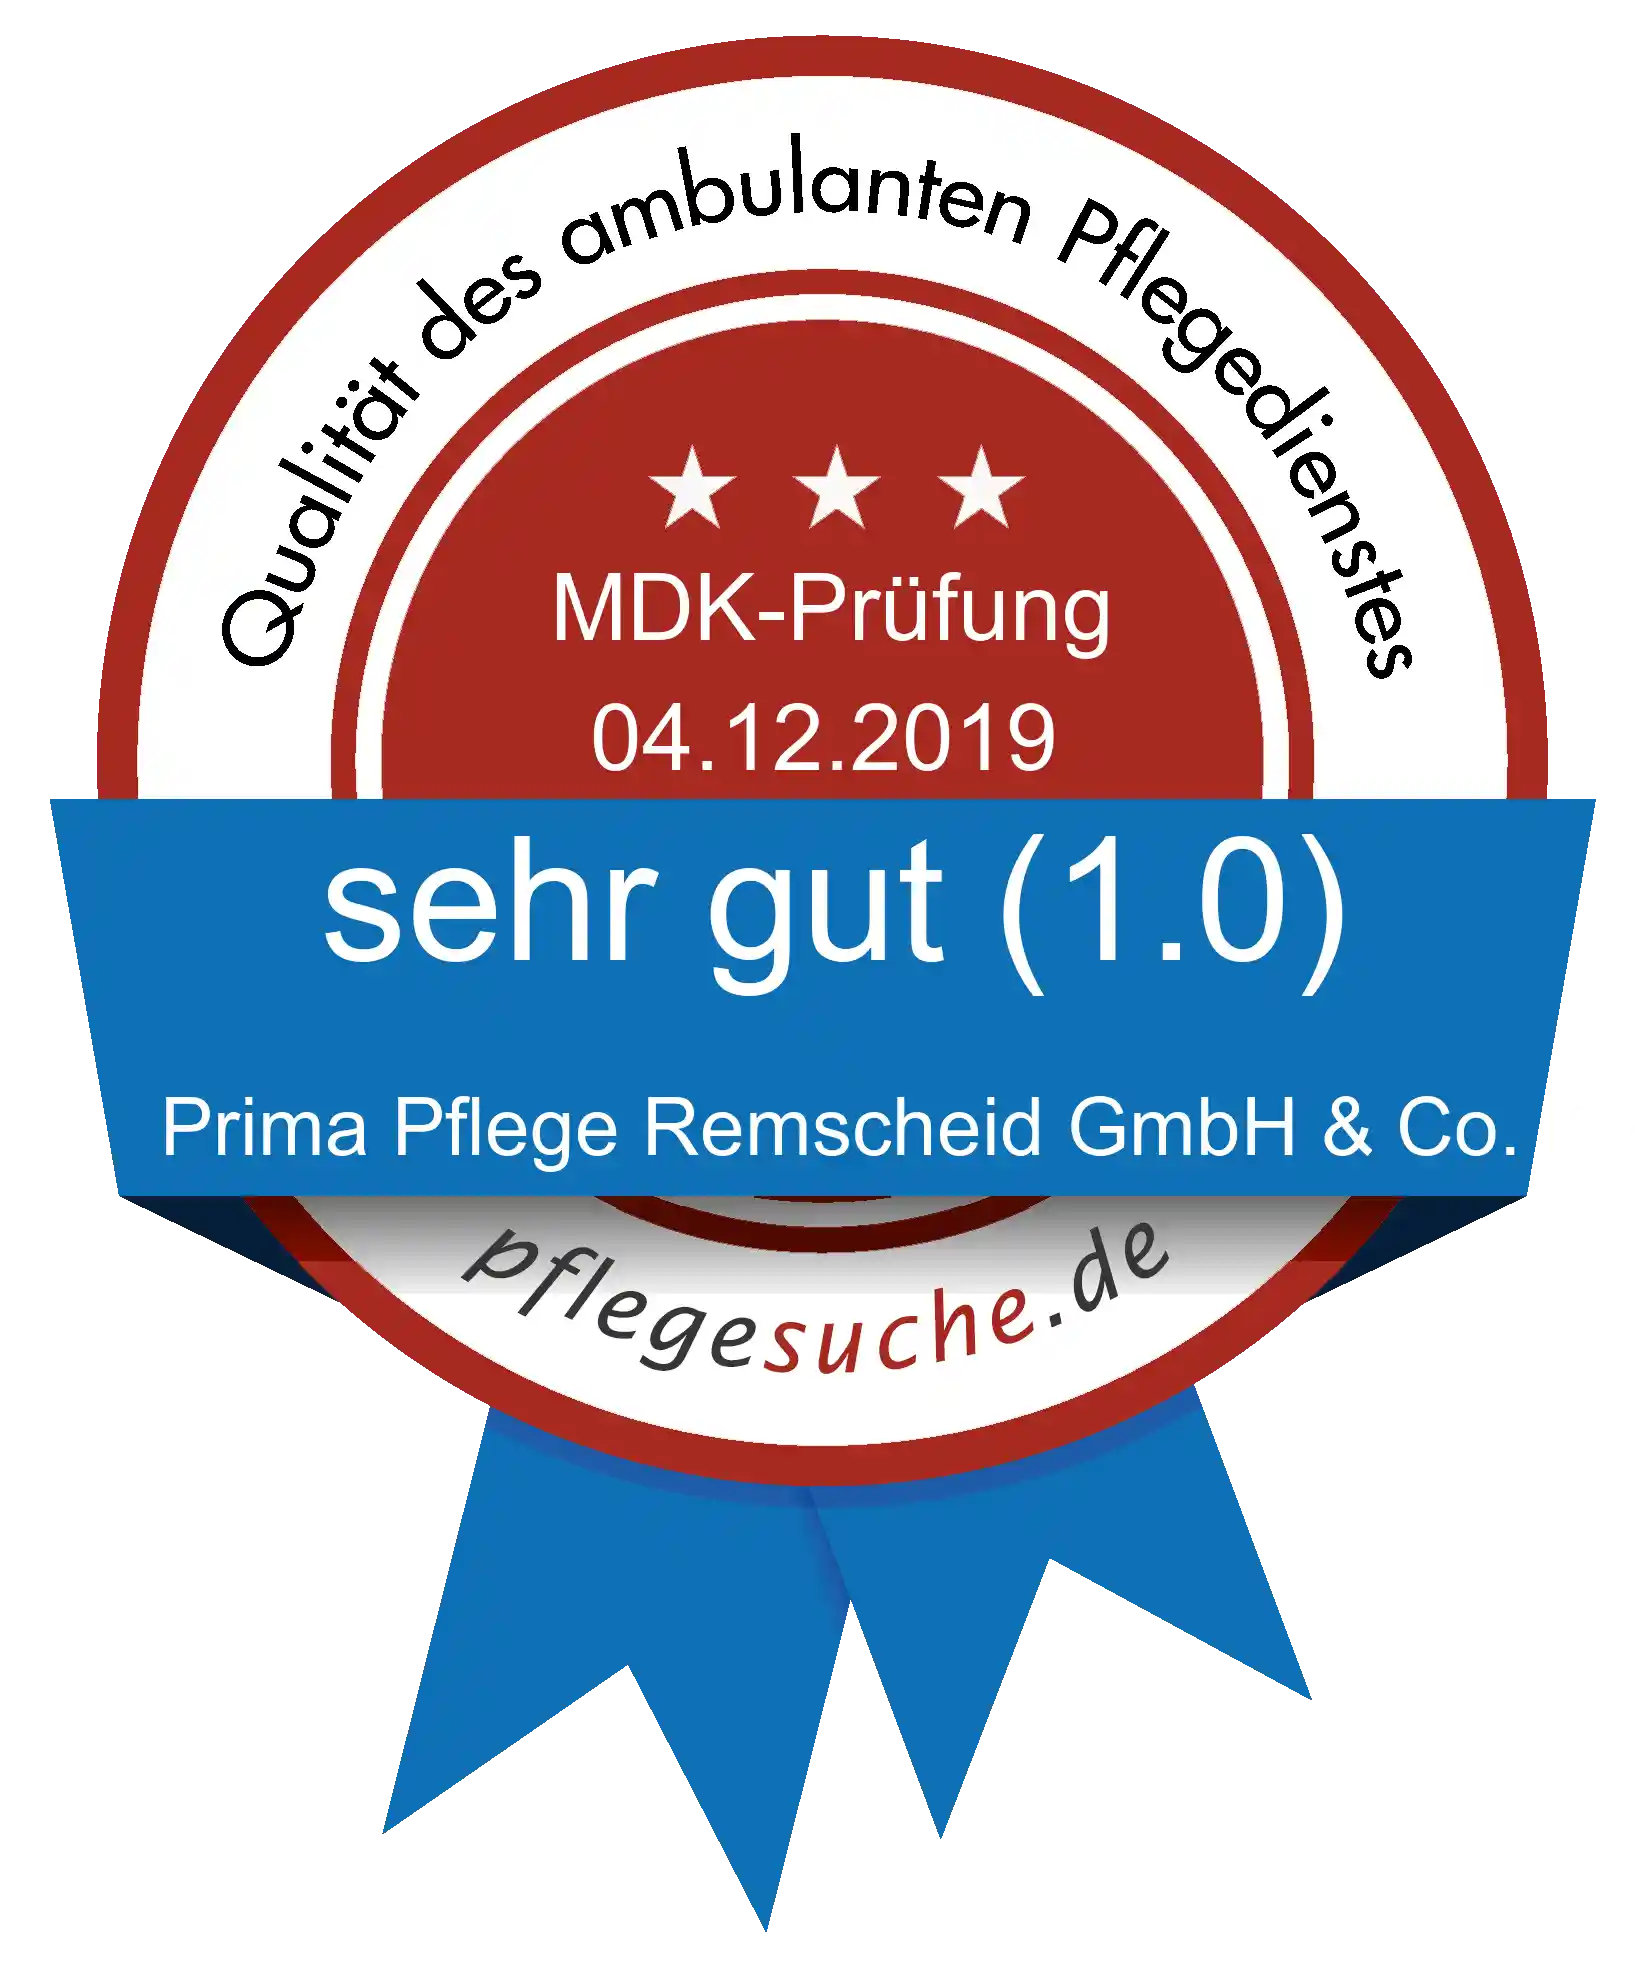 Siegel Benotung: Prima Pflege Remscheid GmbH & Co. KG